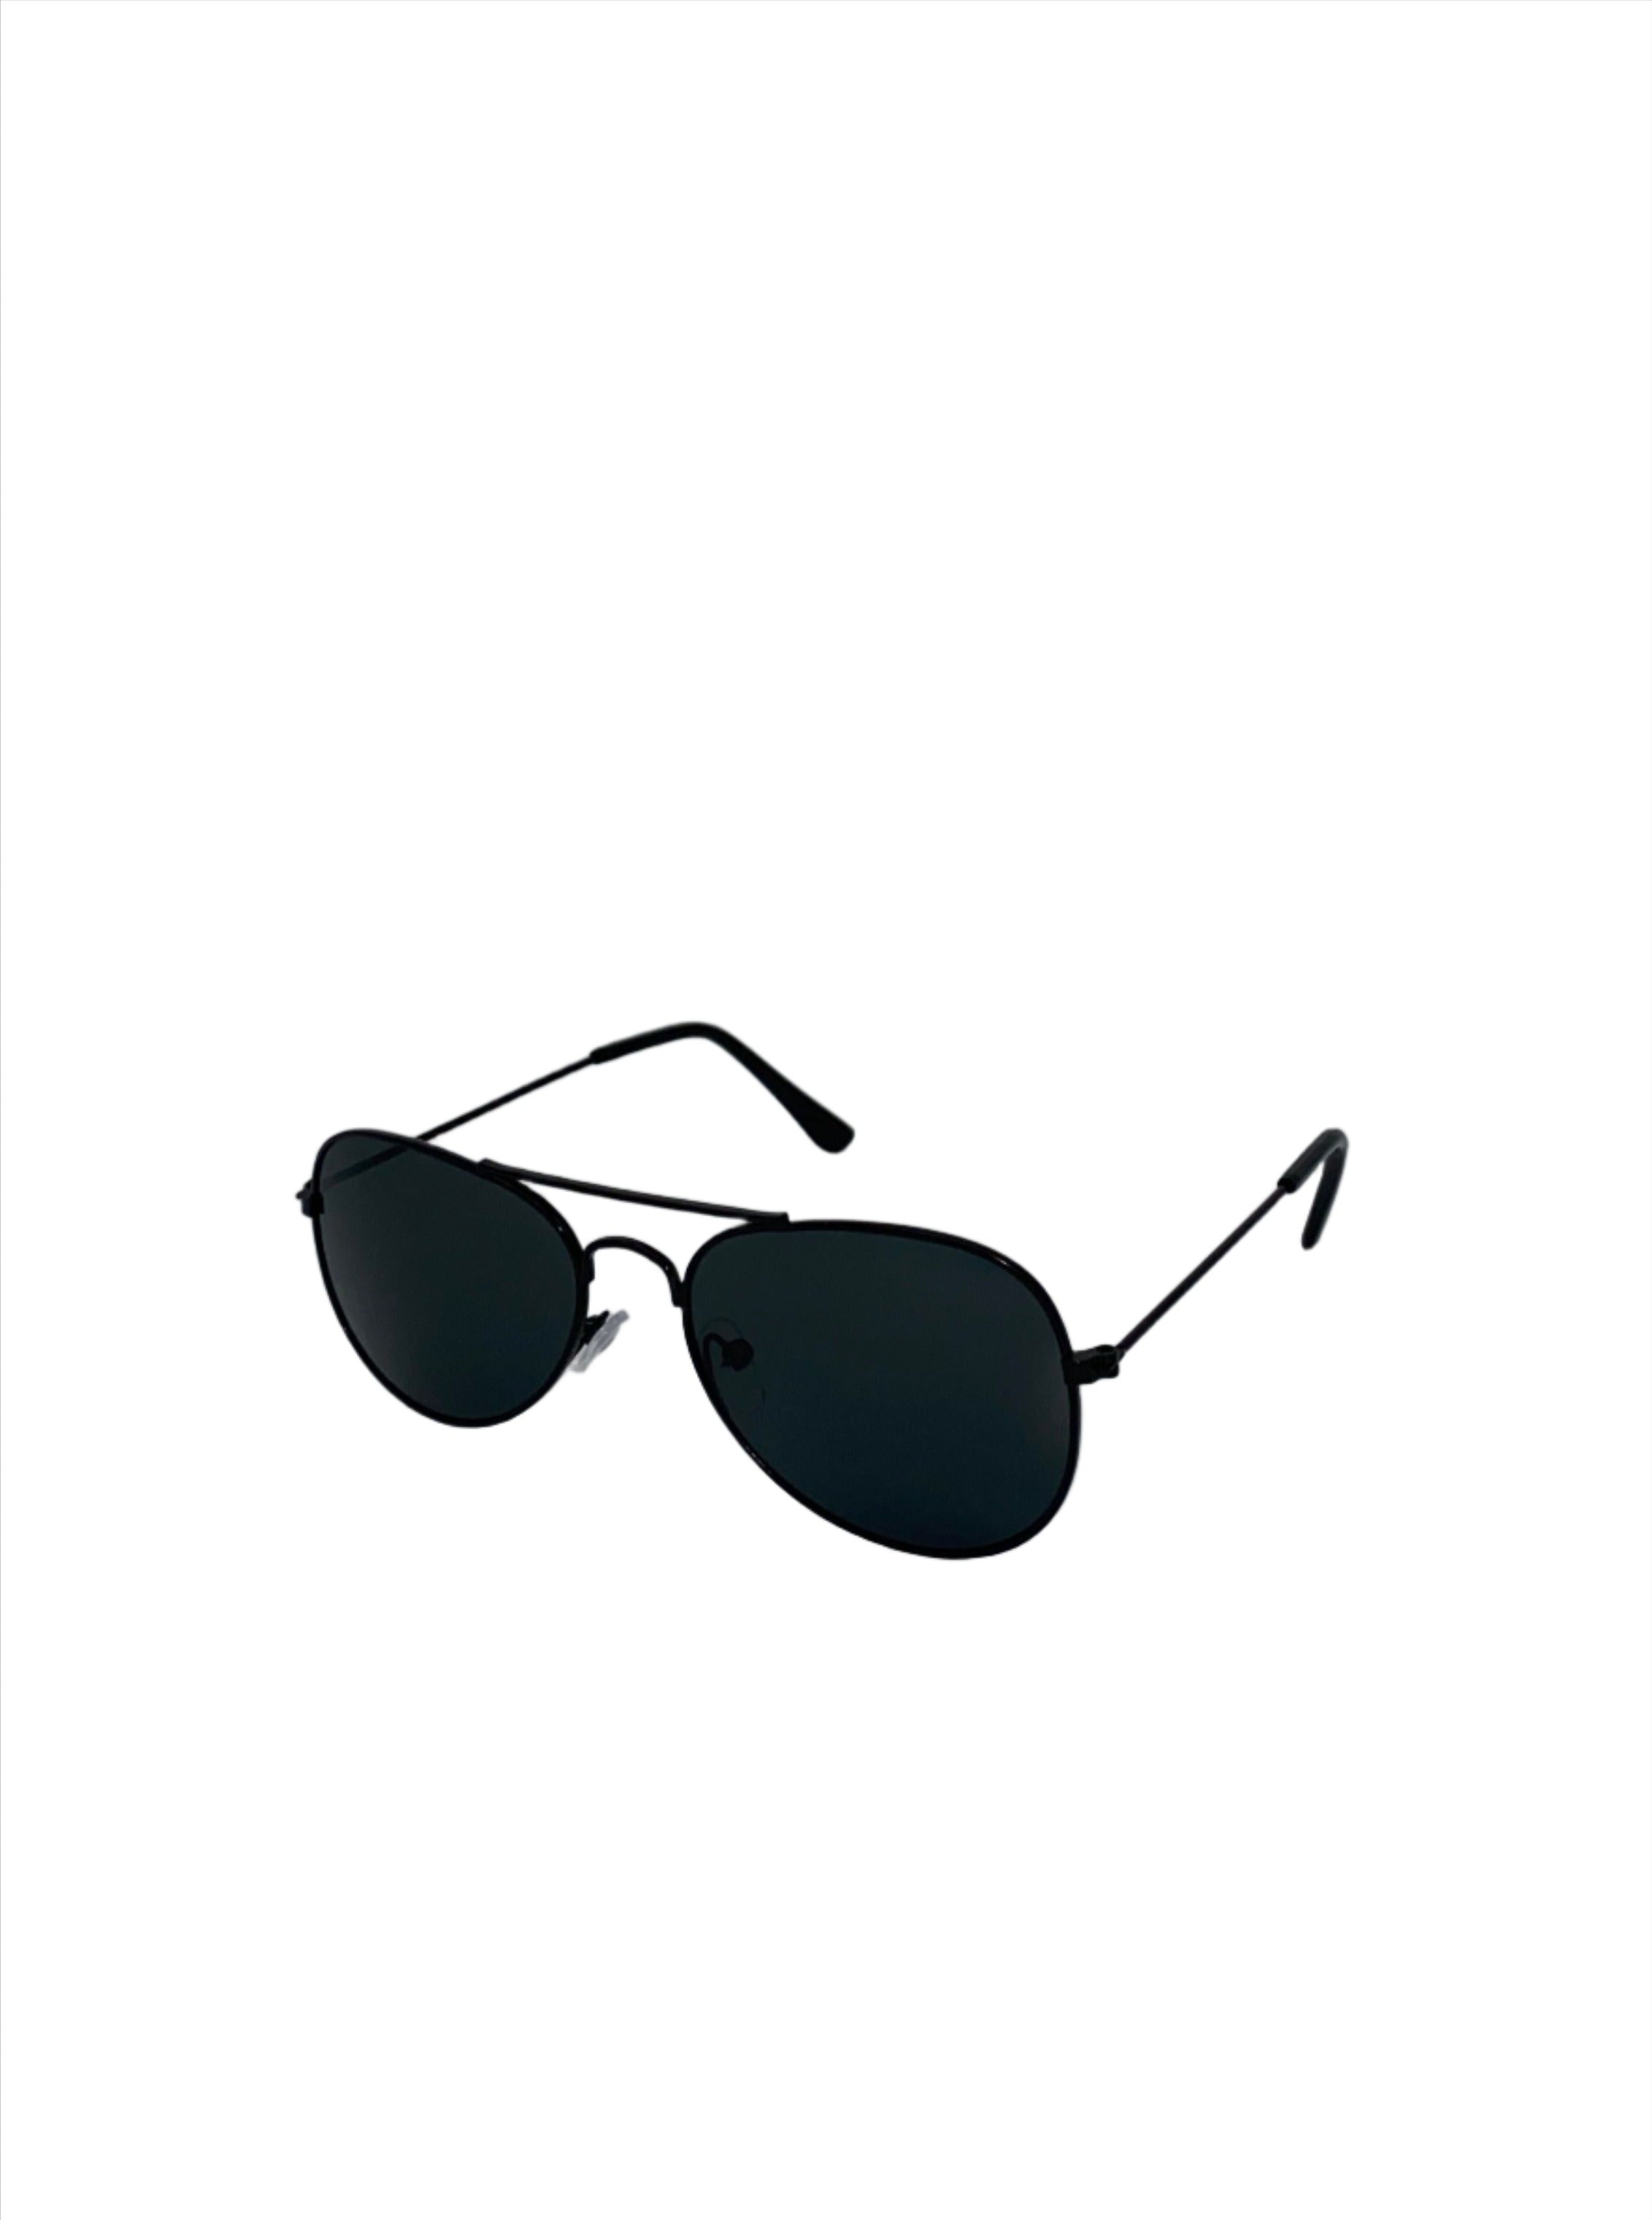 Aviator Sunglasses Black Lens- Black Frame